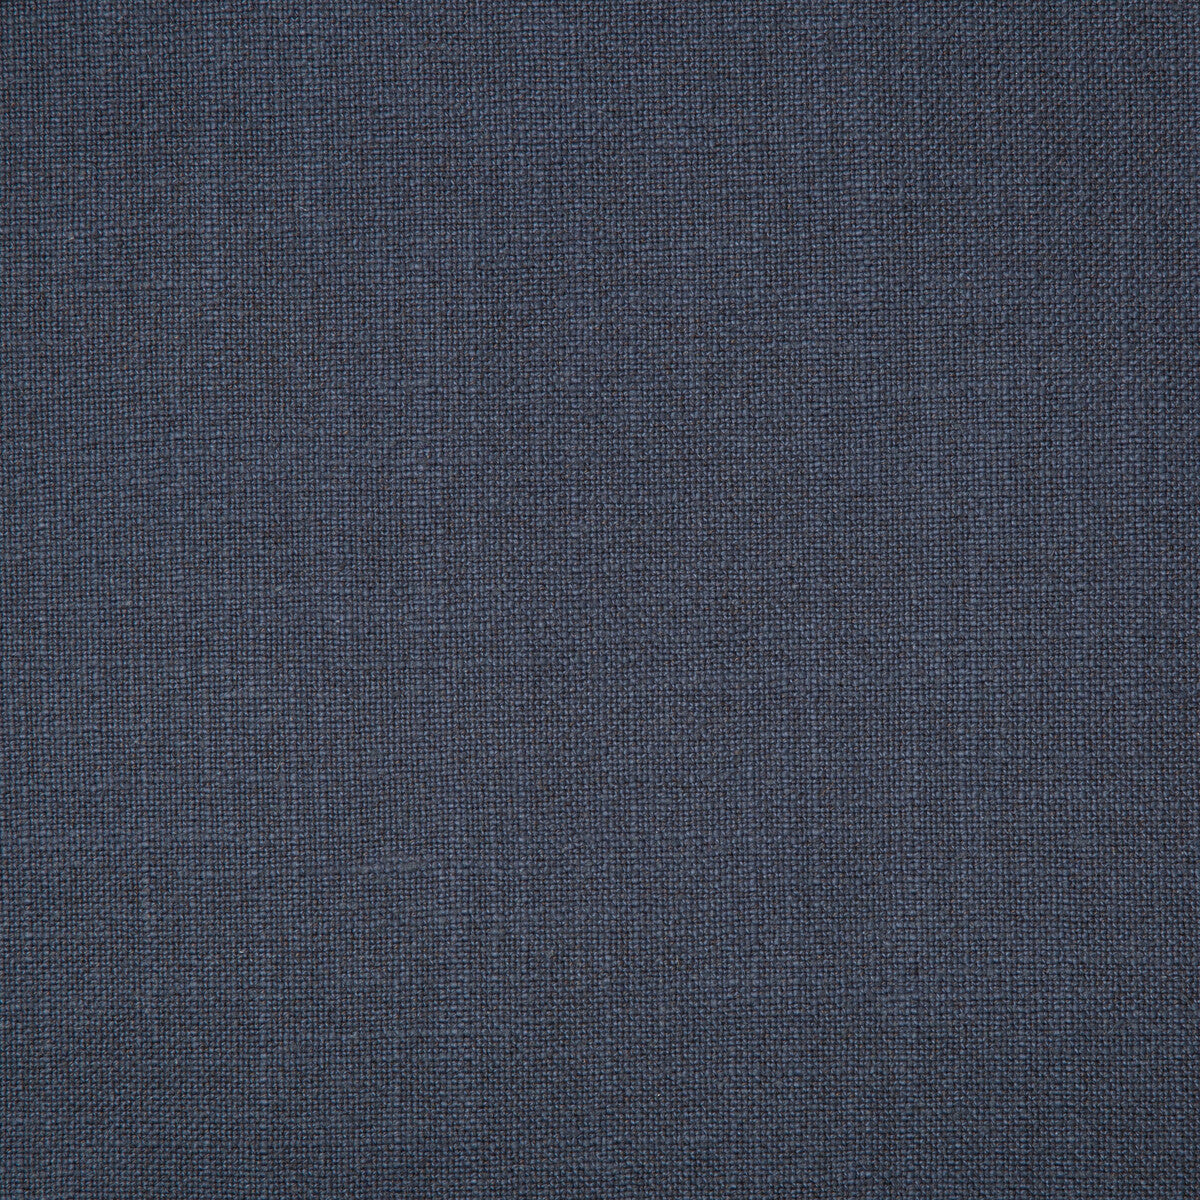 Kravet Basics fabric in 35783-52 color - pattern 35783.52.0 - by Kravet Basics